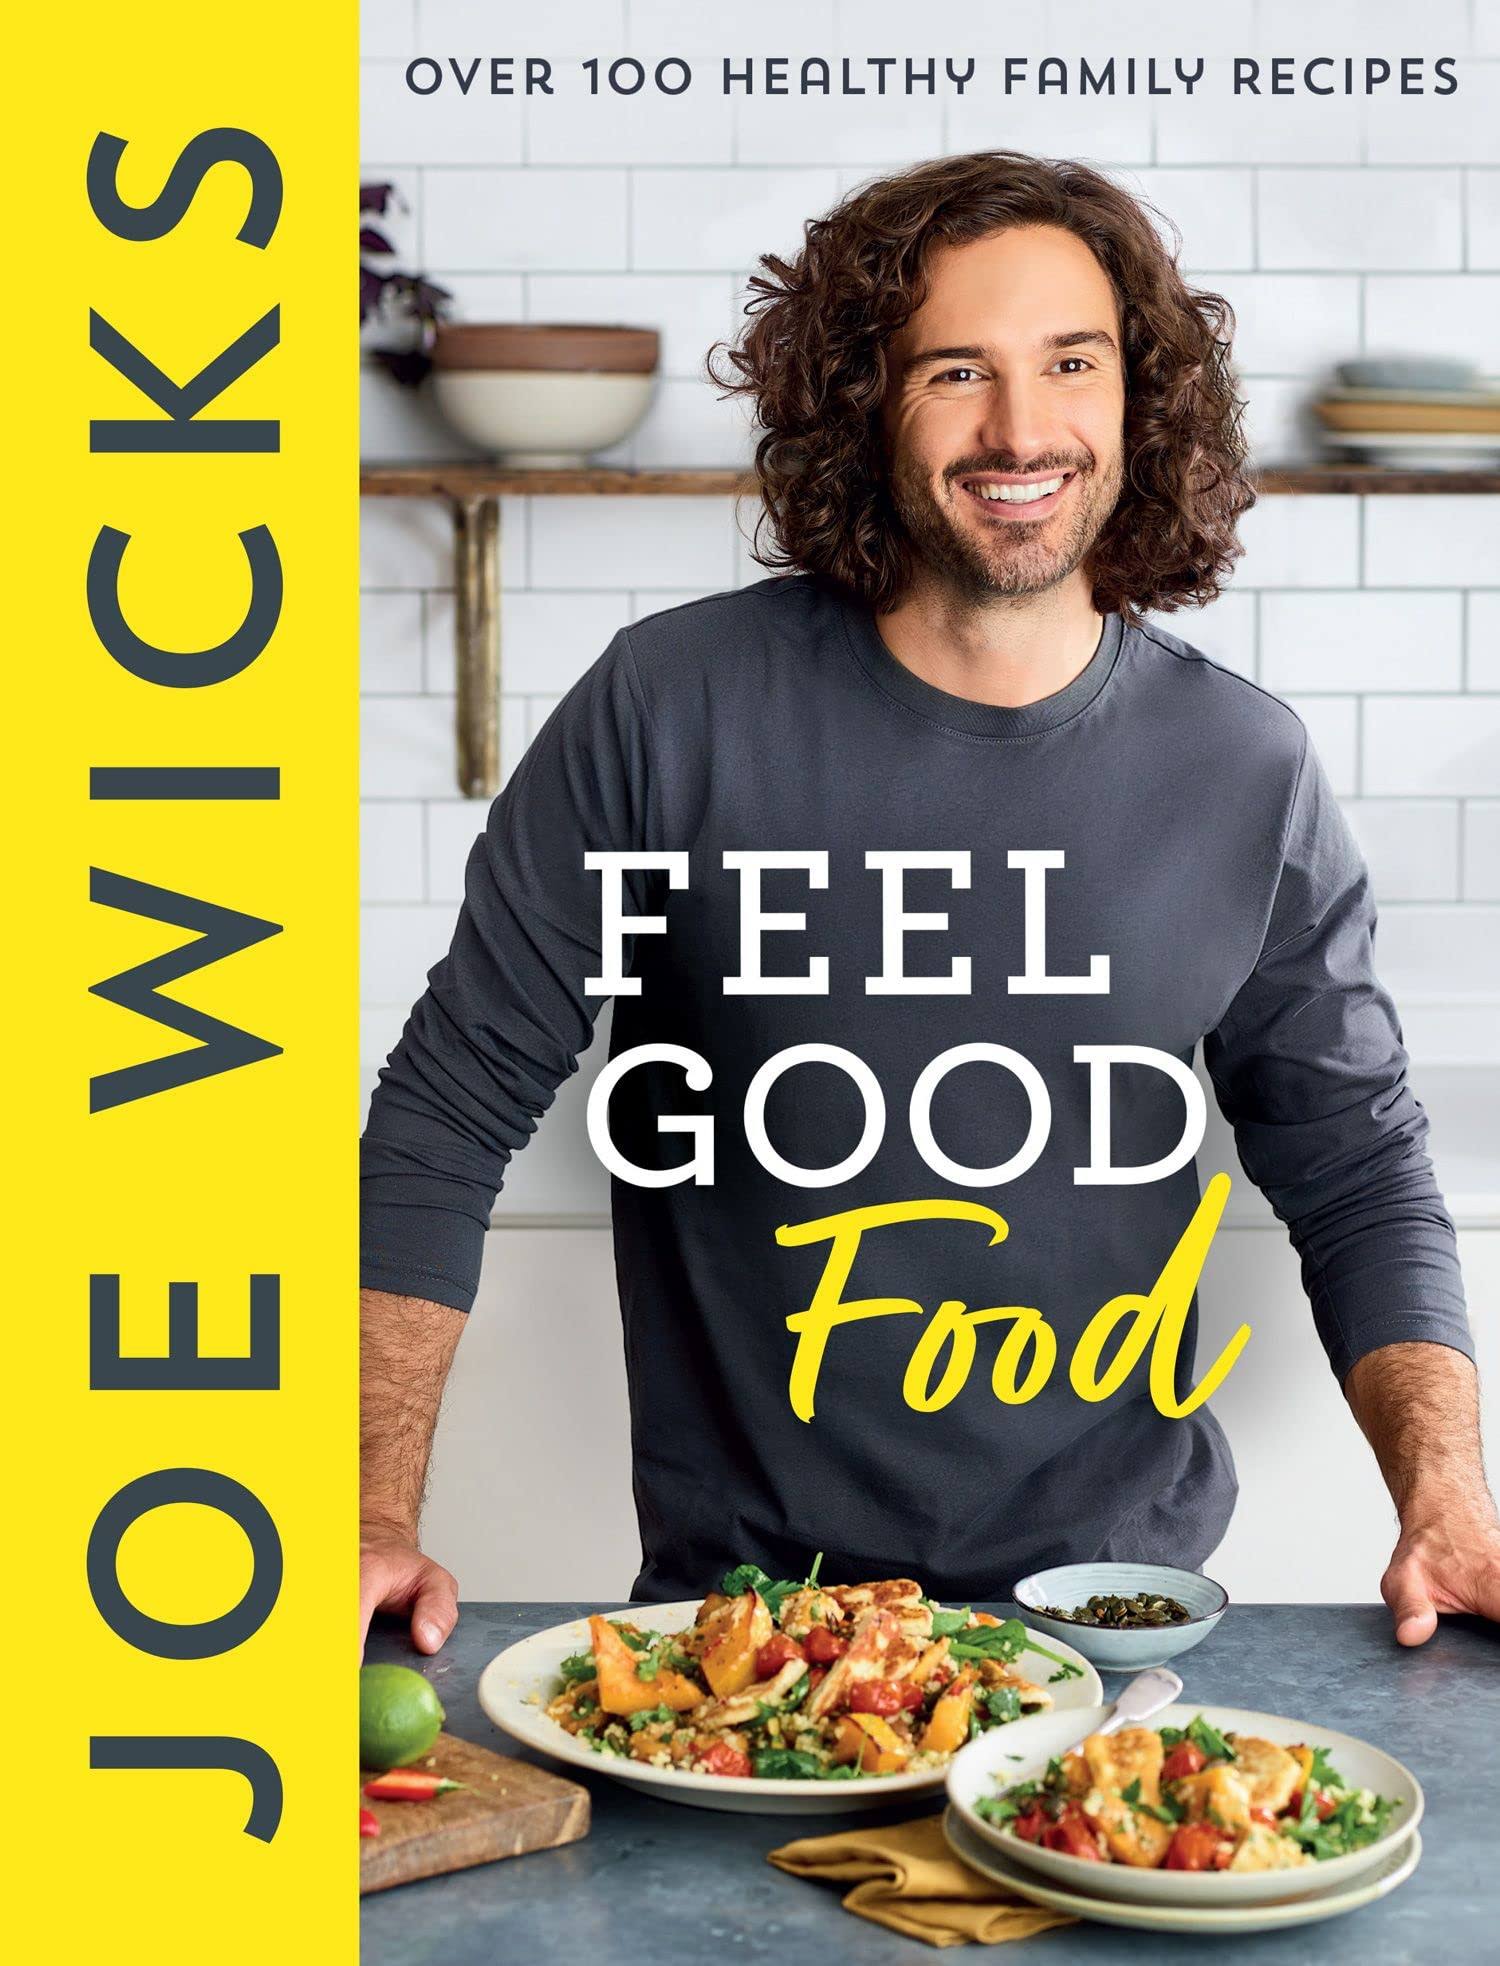 Feel Good Food [Book]